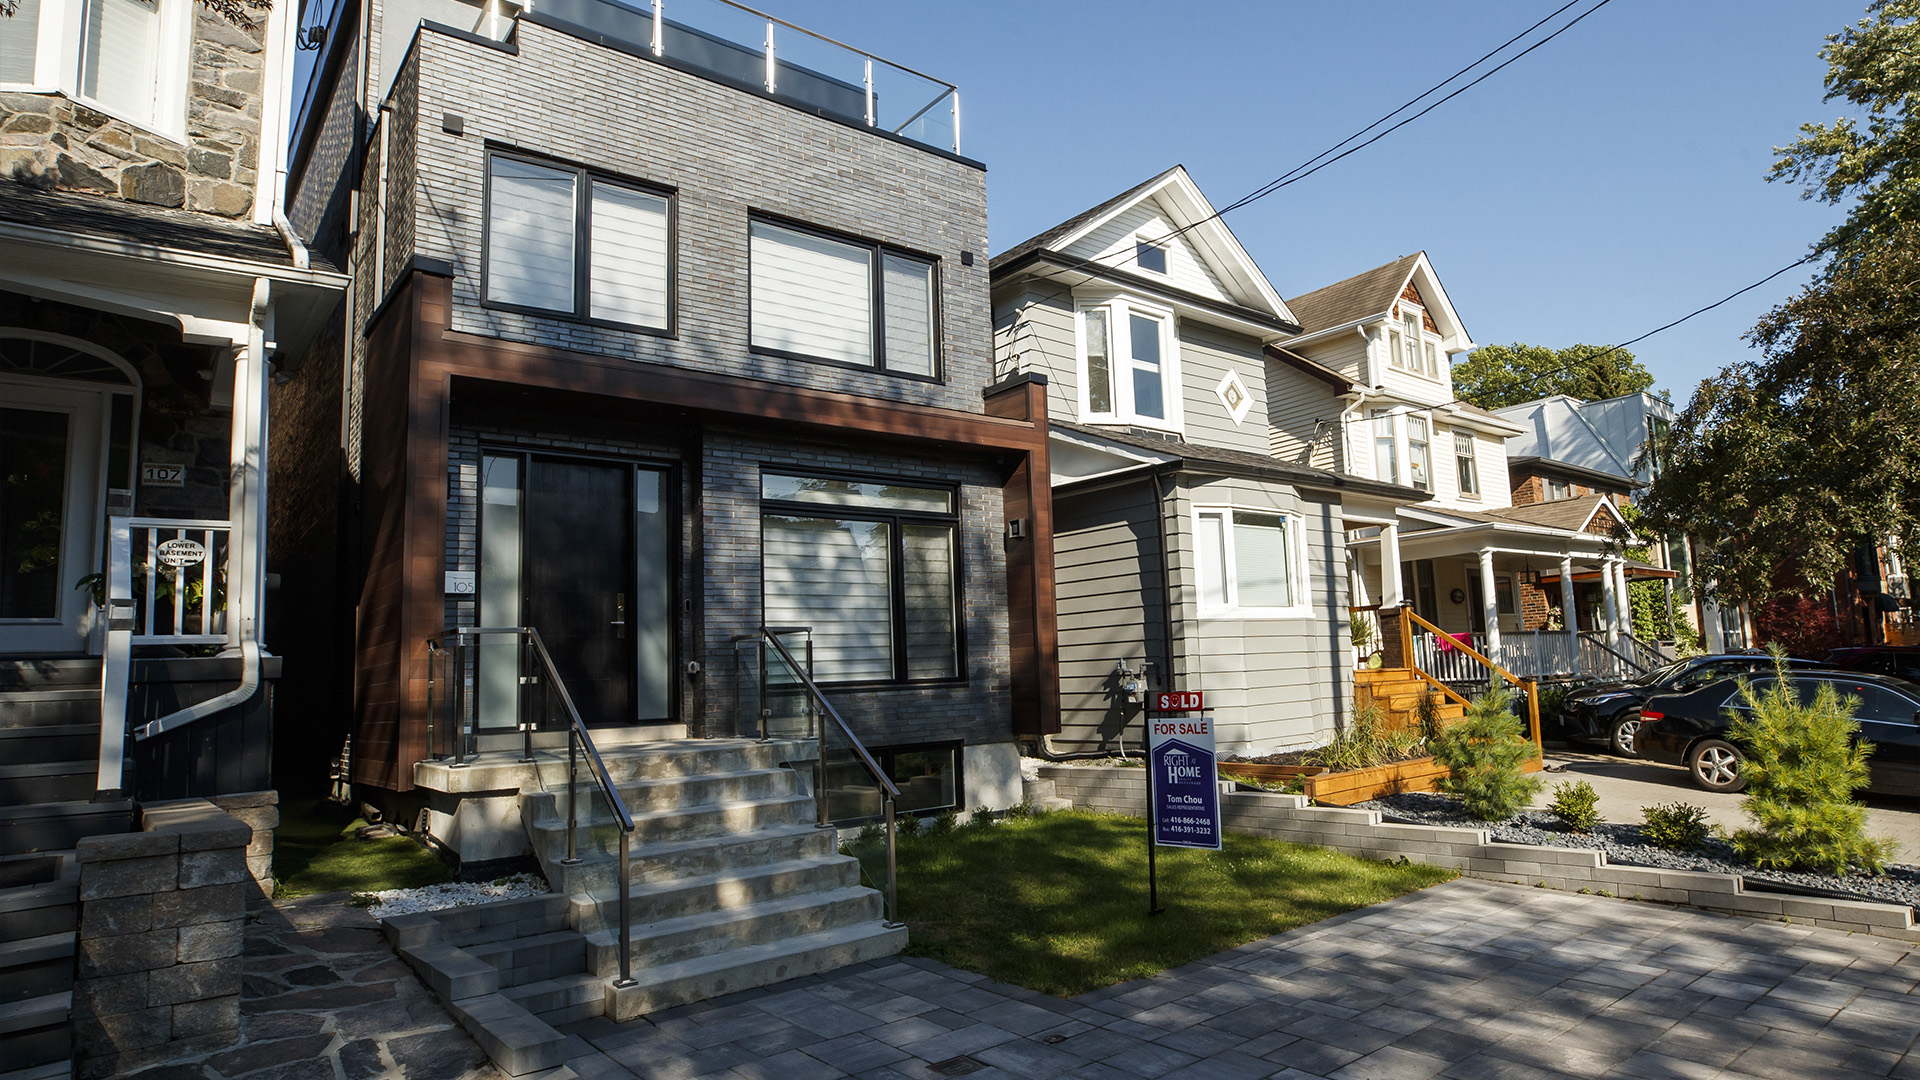 L’Association canadienne de l’immobilier (ACI) confirme une baisse de 1,6% de l’indice des prix des propriétés MLS® entre les mois de novembre et décembre dernier, ce qui «poursuit la tendance installée depuis le printemps».